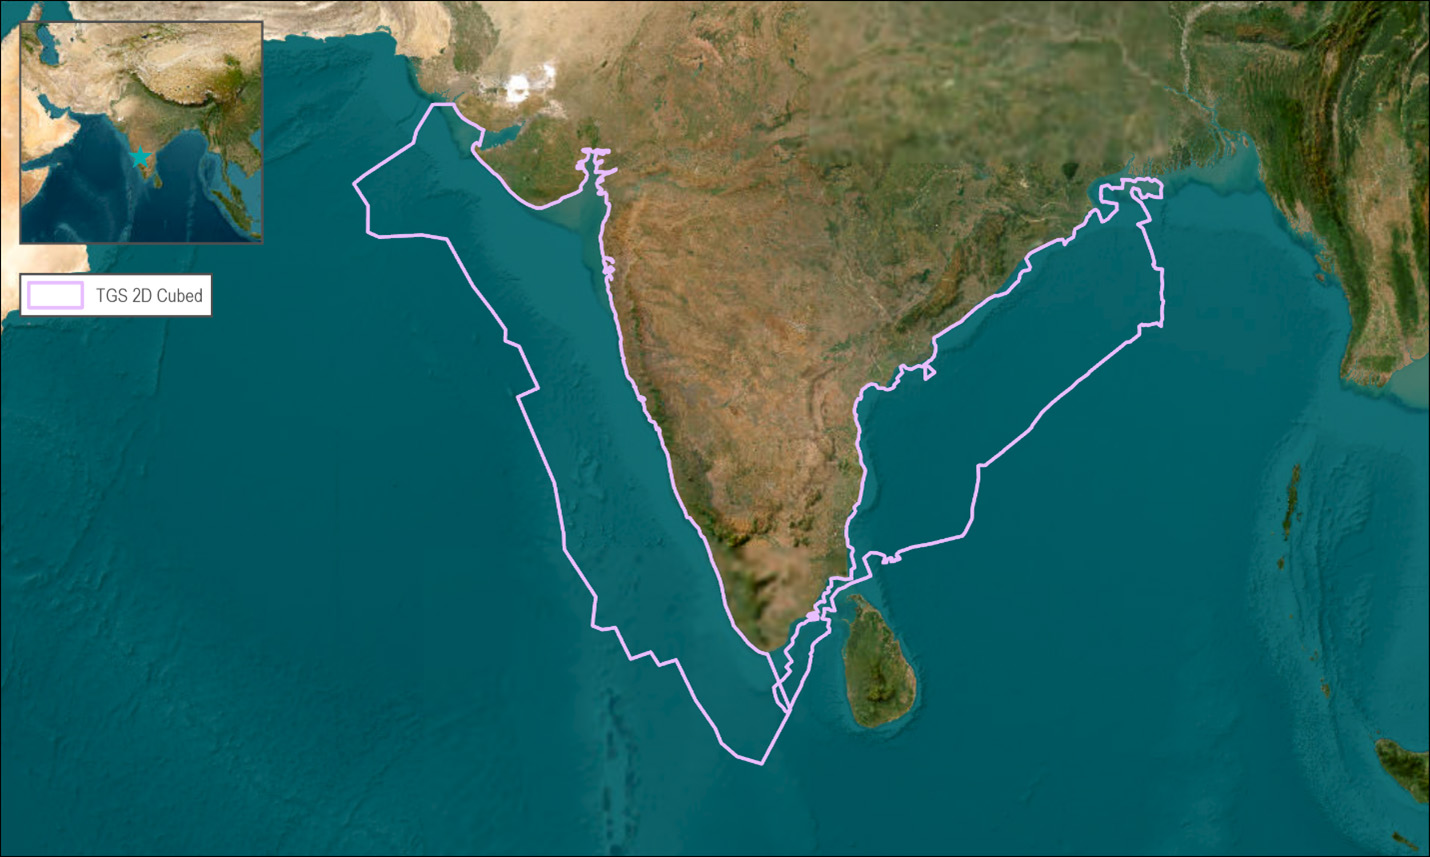 India E&W coast 2D